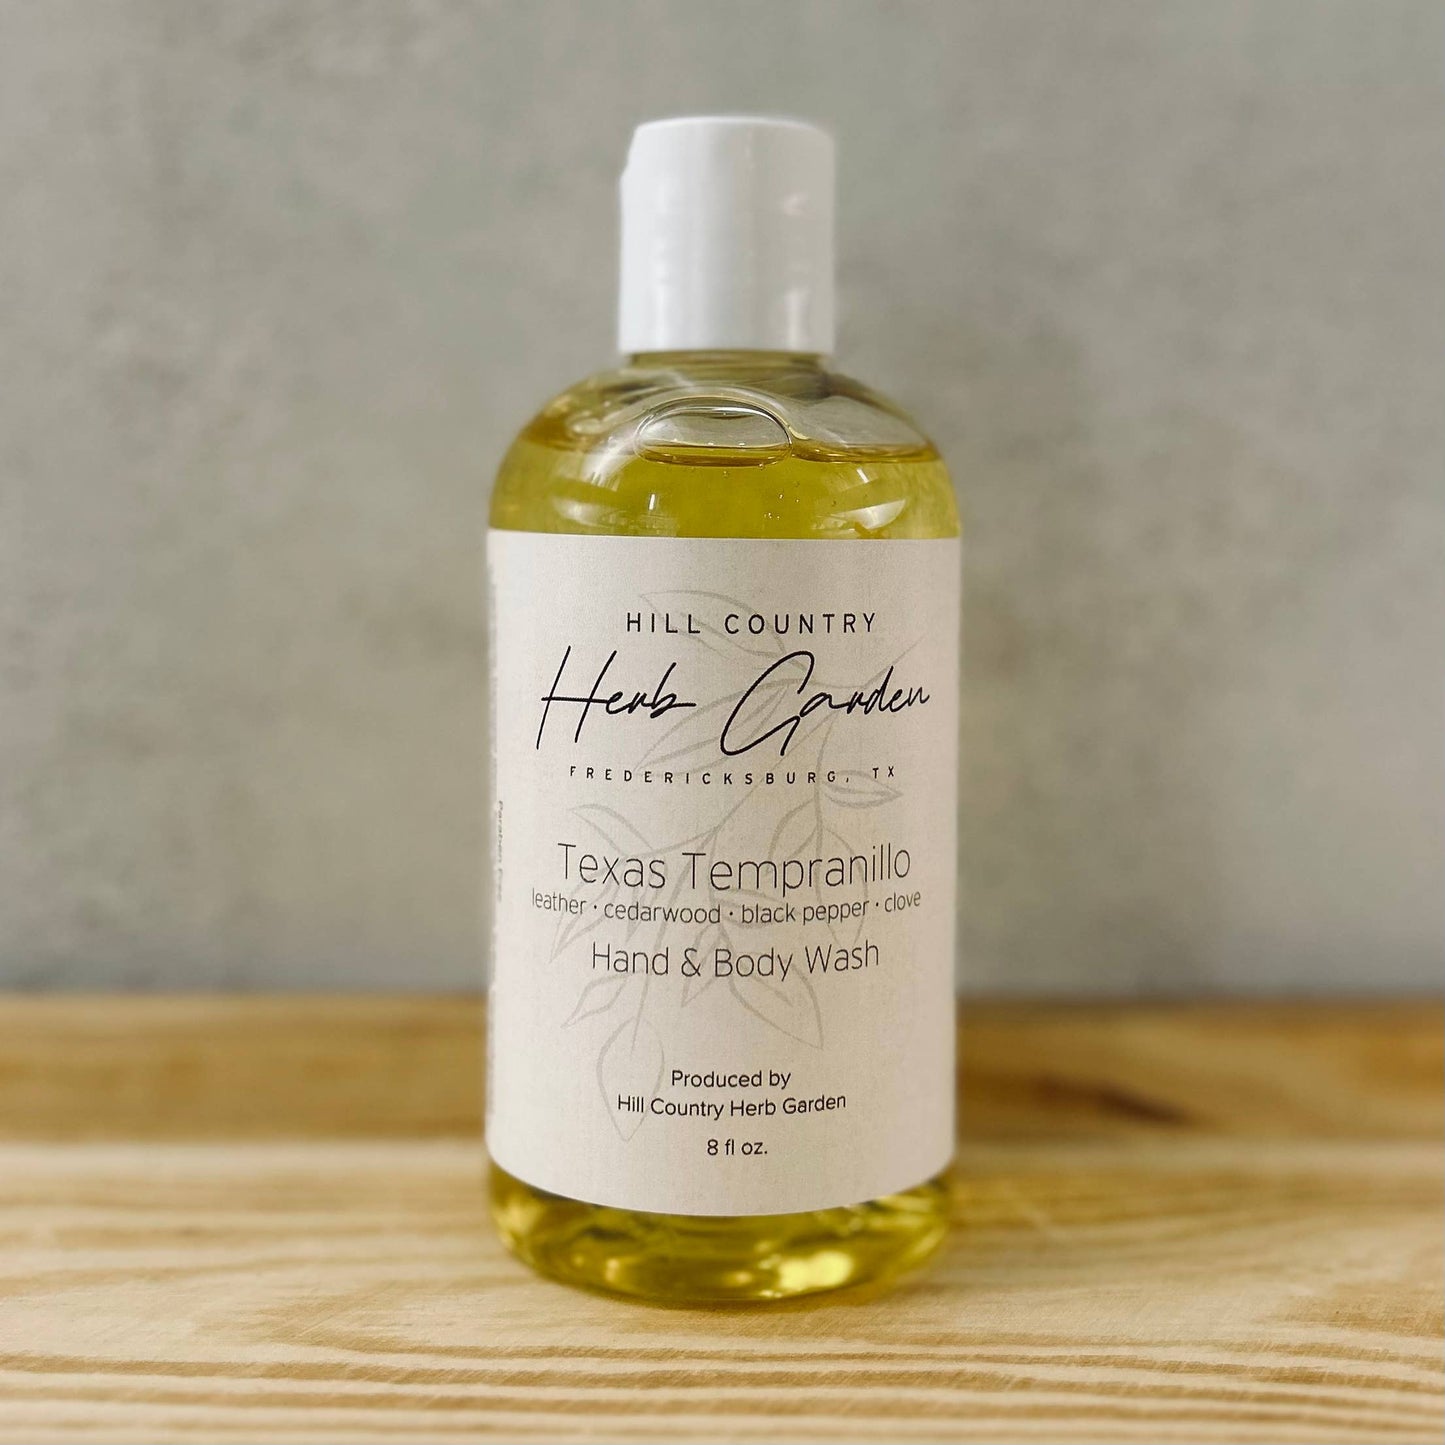 Hill Country Herb Garden - Texas Tempranillo Hand & Body Wash